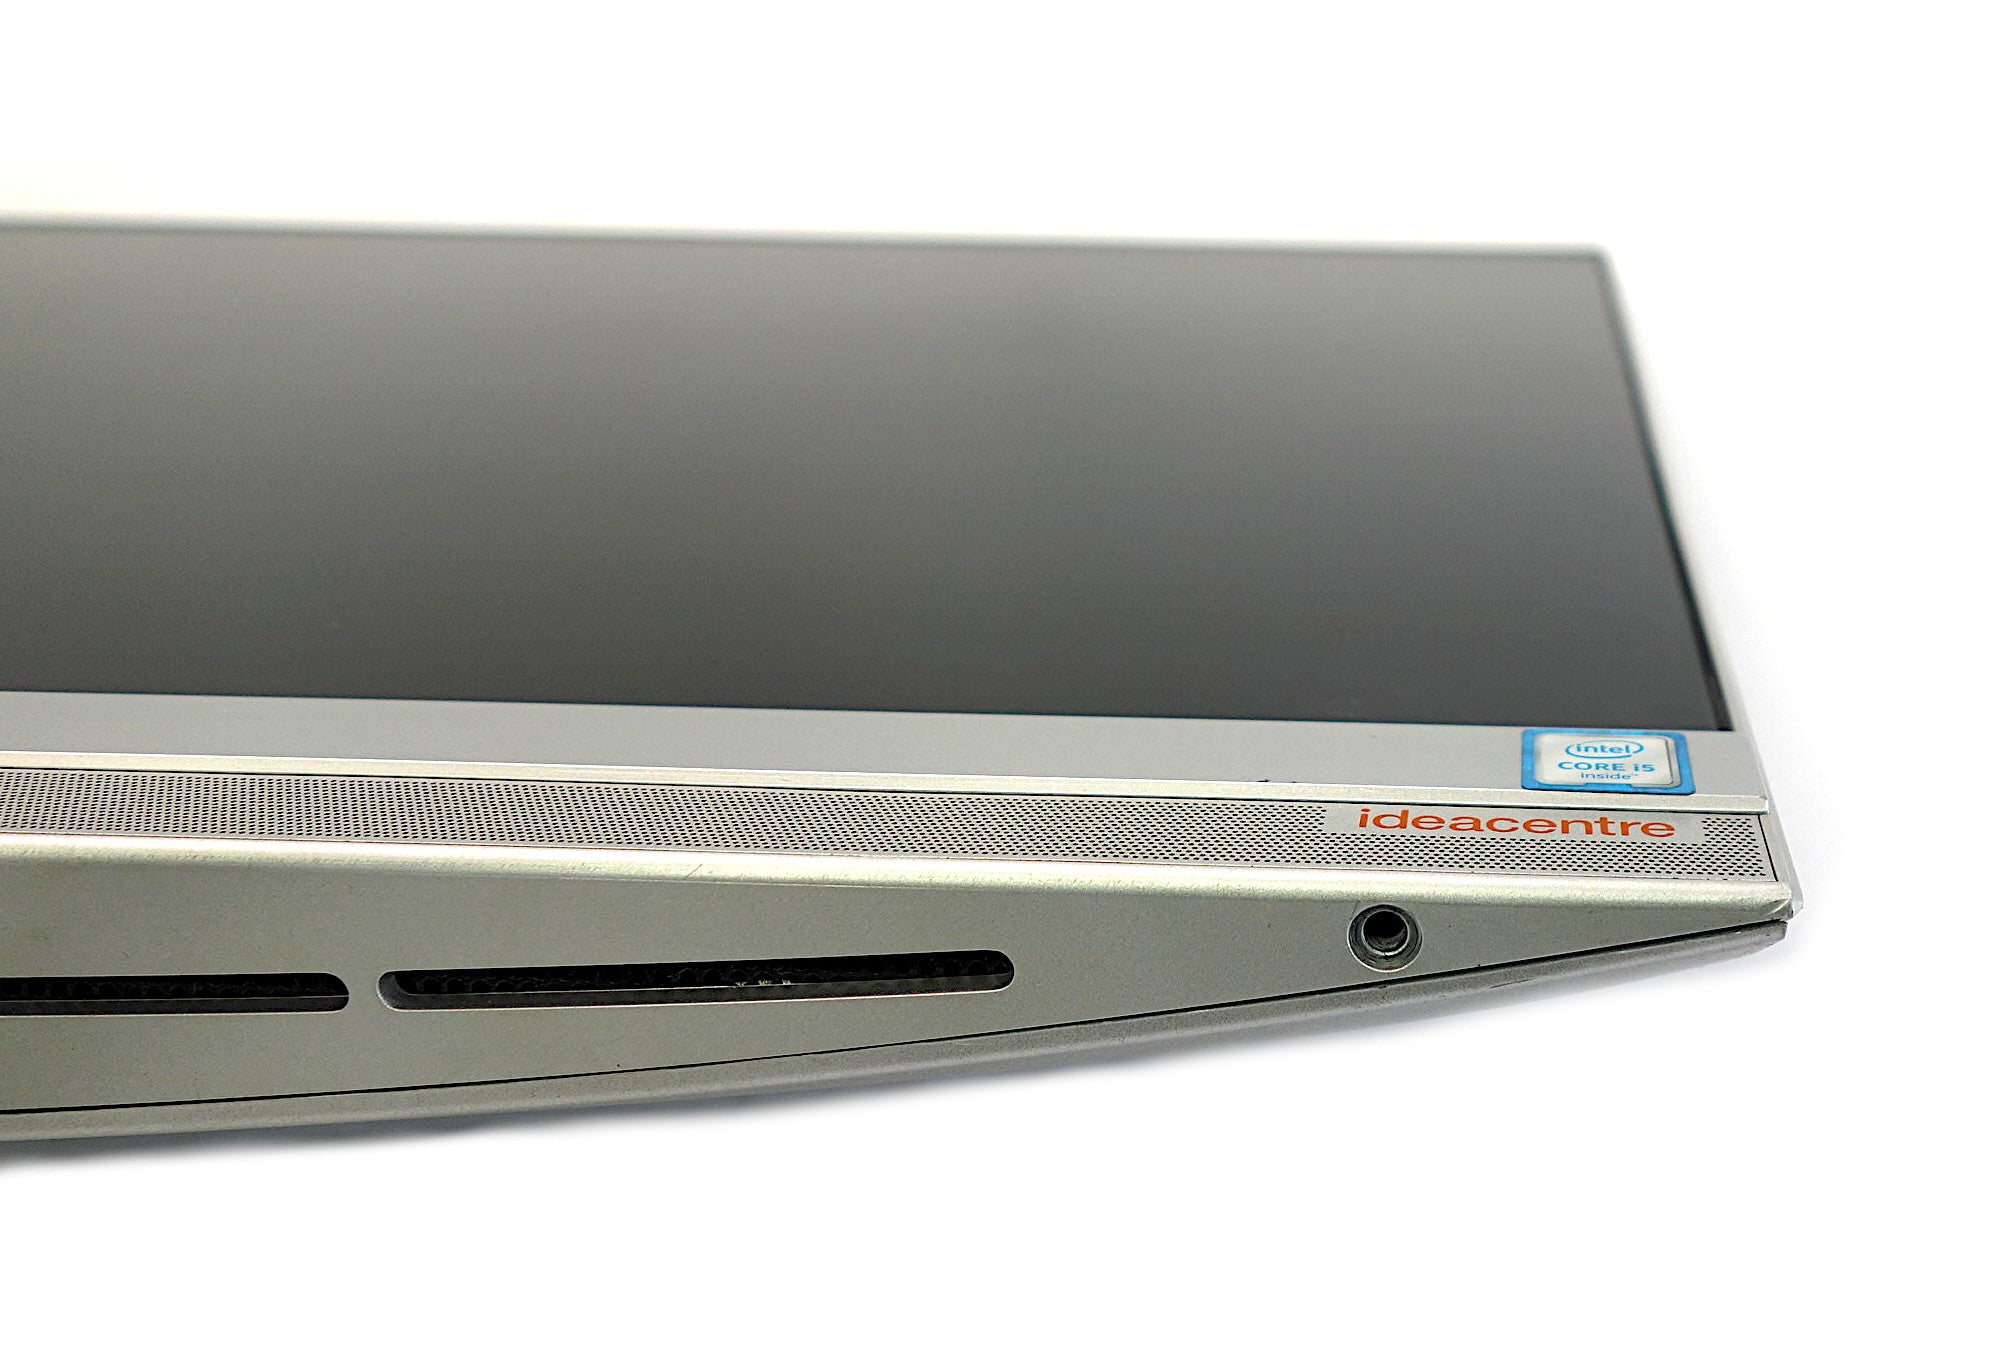 Lenovo Ideacentre 510S AiO, 23" Core i5 6th Gen, 8GB RAM, 256GB SSD